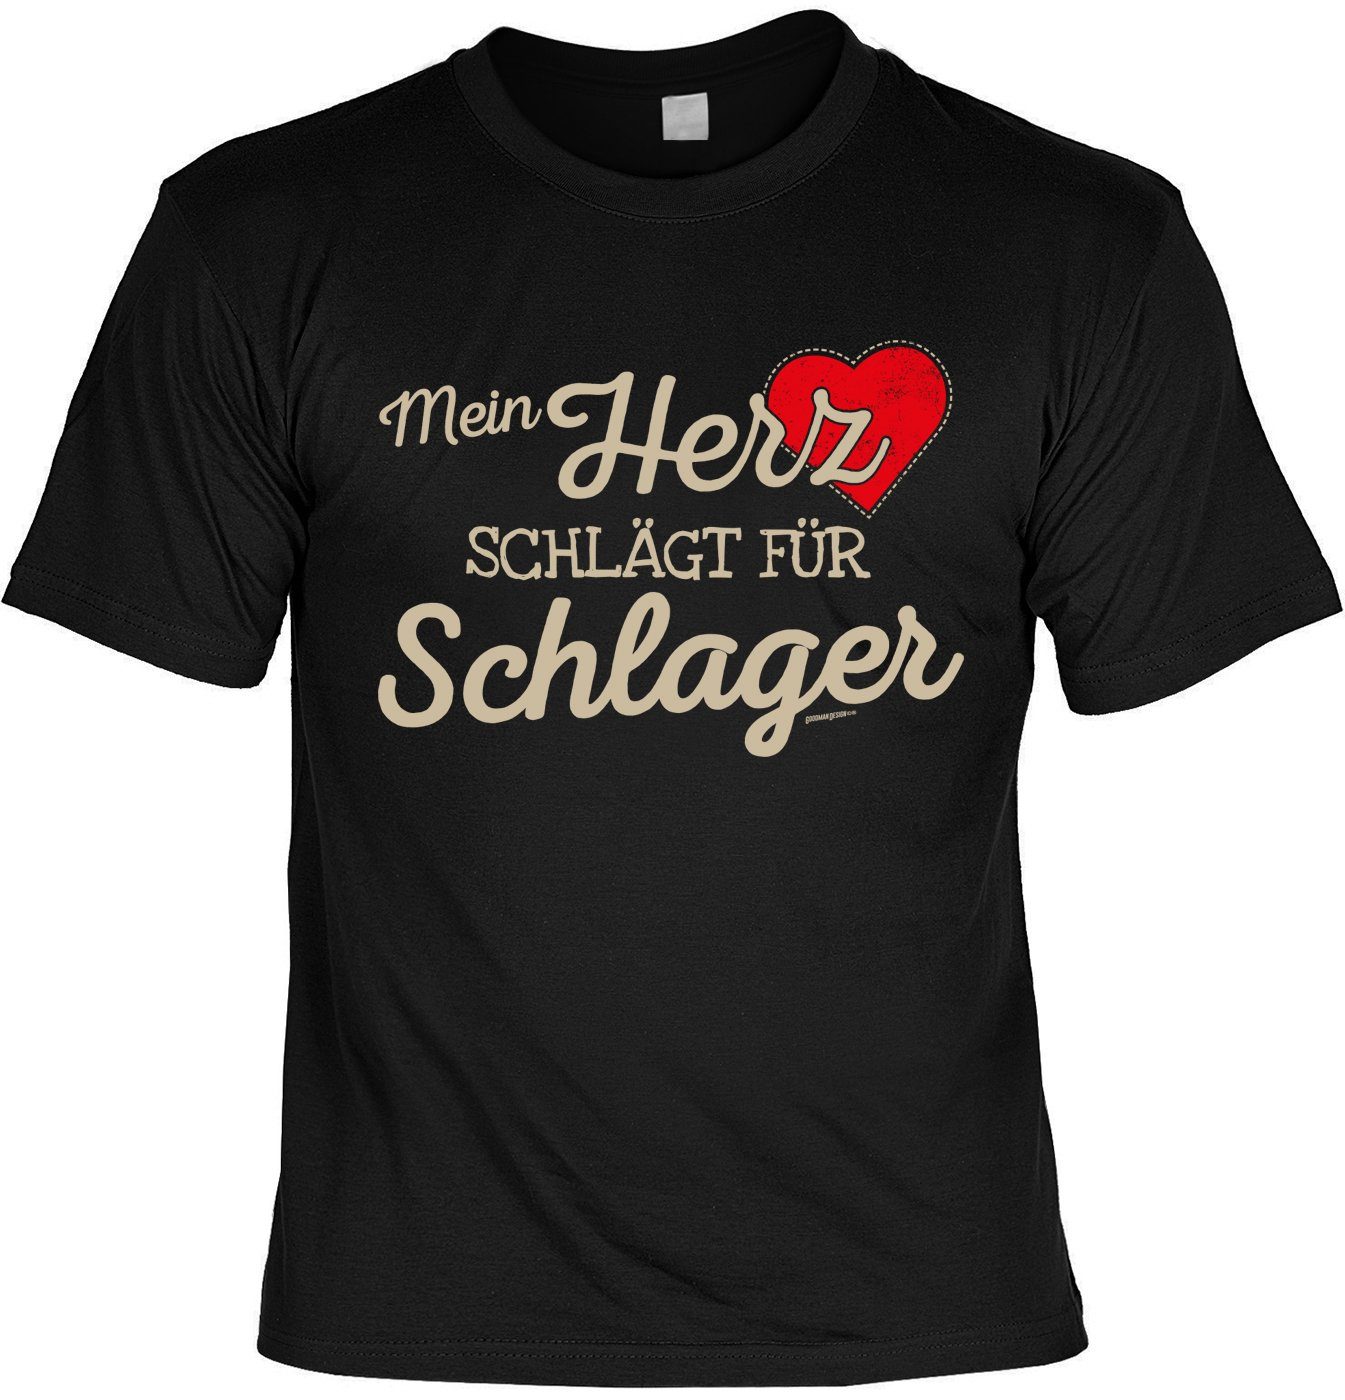 Art & Detail Shirt T-Shirt Mein HERZ schlägt für Schlager, Weihnachten - Sprüche Fun T-shirt Partner, Look, Familie, Schlager, Party